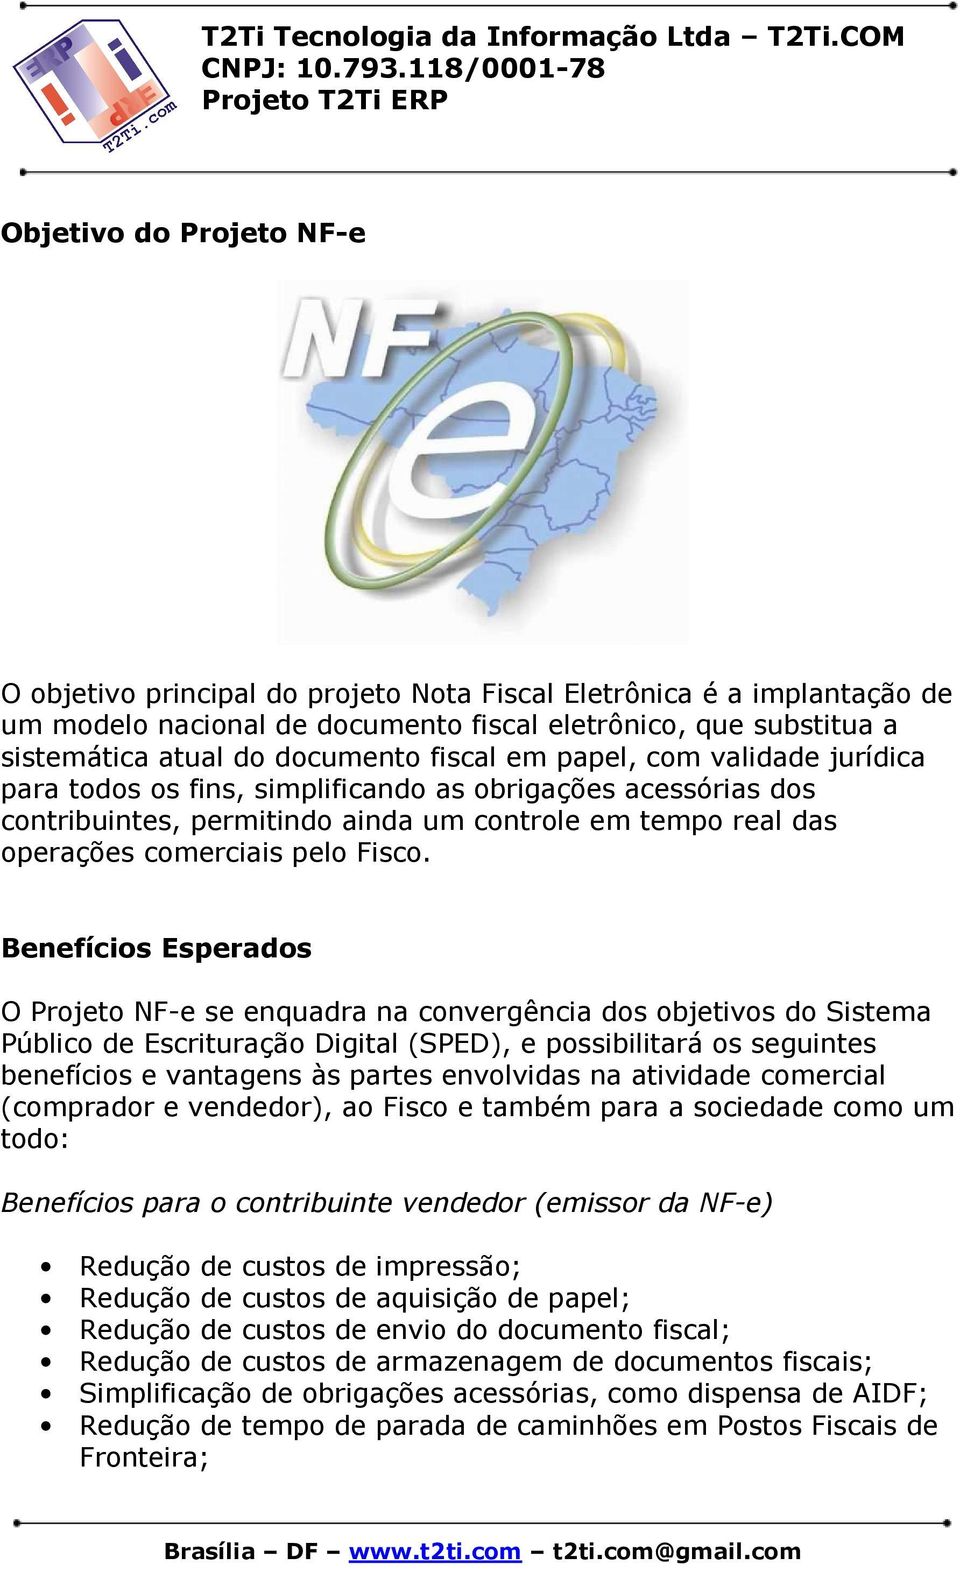 Benefícios Esperados O Projeto NF-e se enquadra na convergência dos objetivos do Sistema Público de Escrituração Digital (SPED), e possibilitará os seguintes benefícios e vantagens às partes